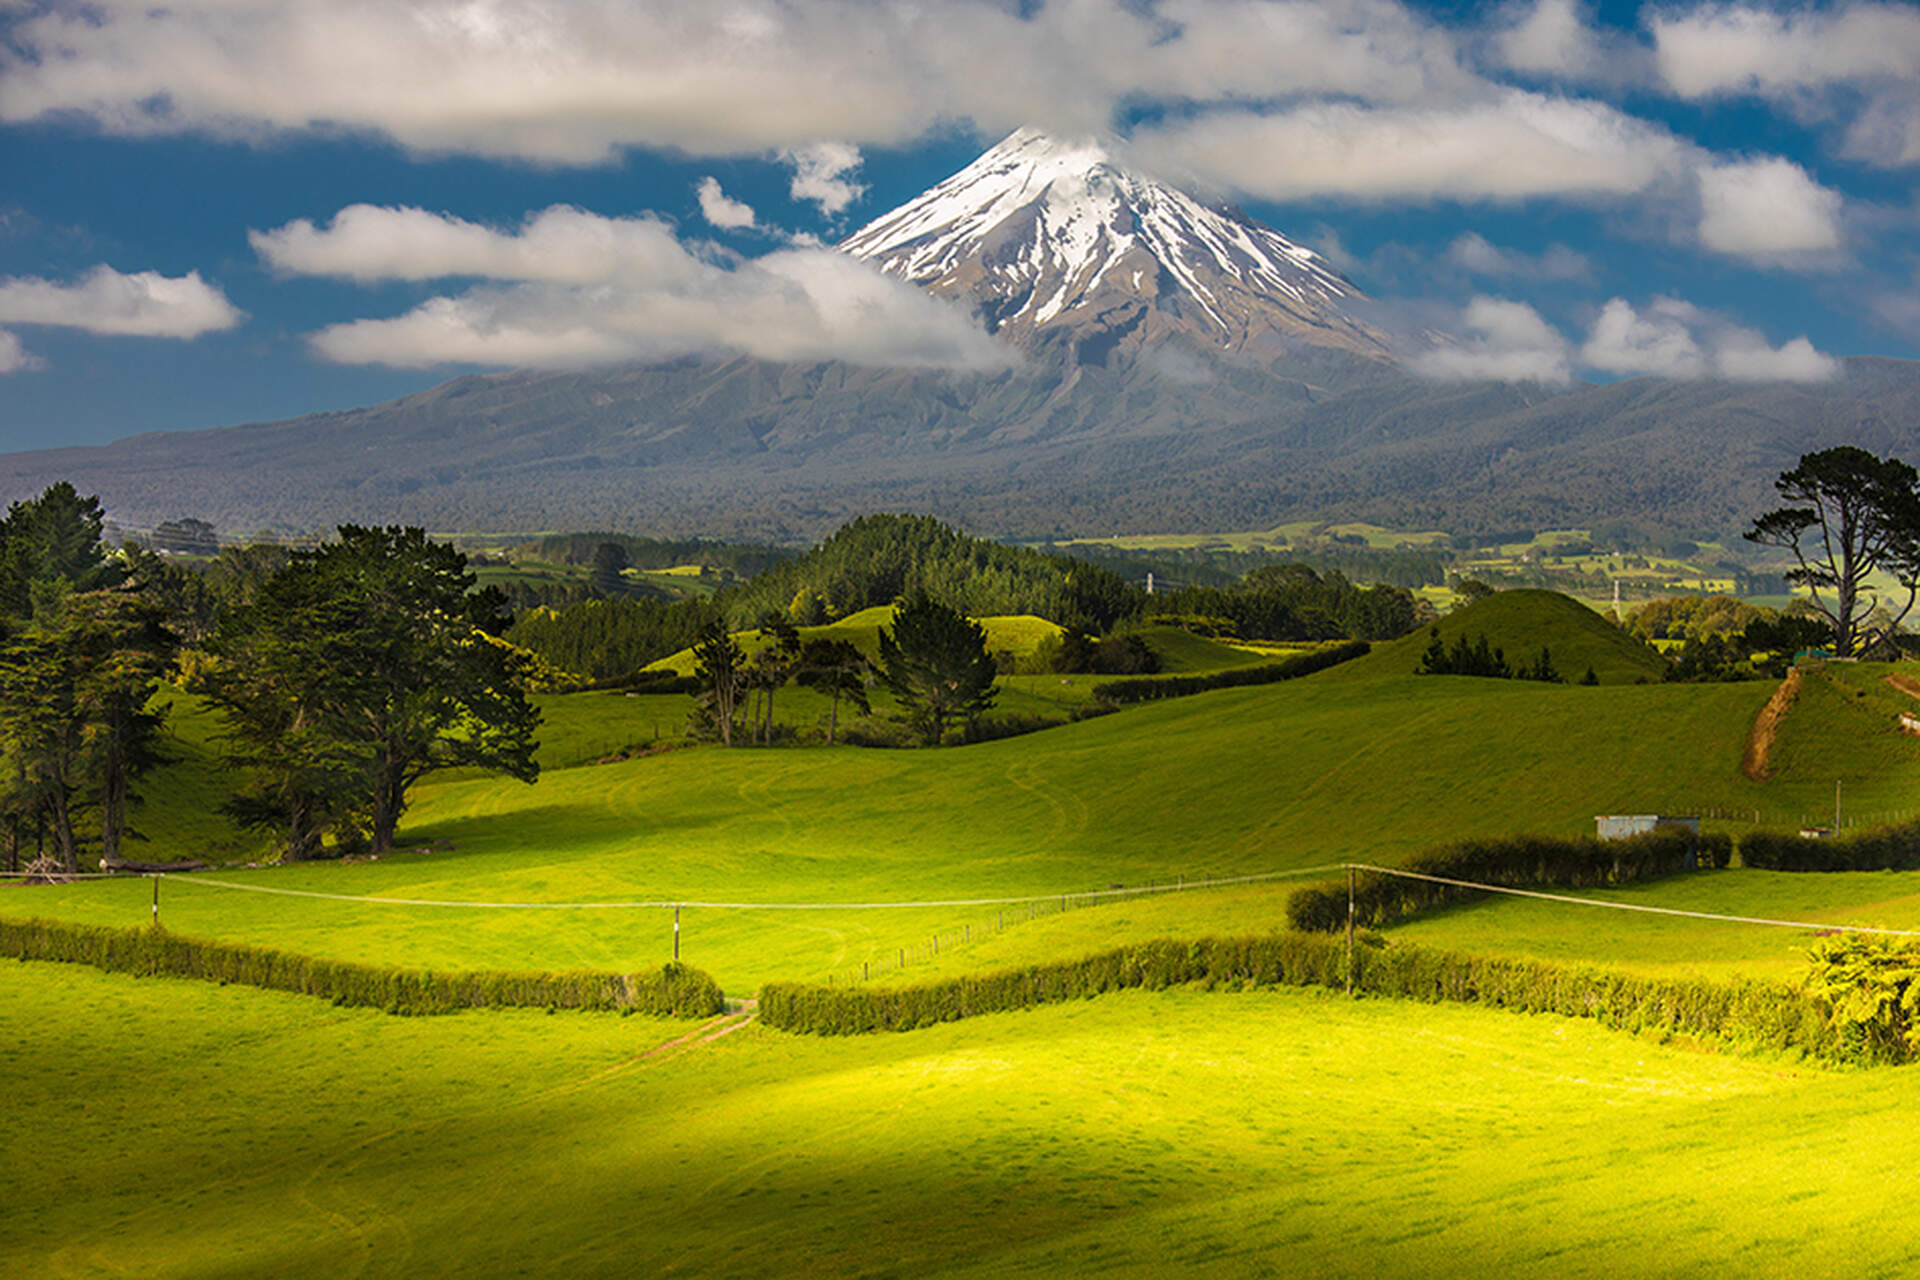 Neuseeland - Ein halbes Jahr durchs Land der Kiwis (Live-Reportage) - Szenenbild 1 von 2